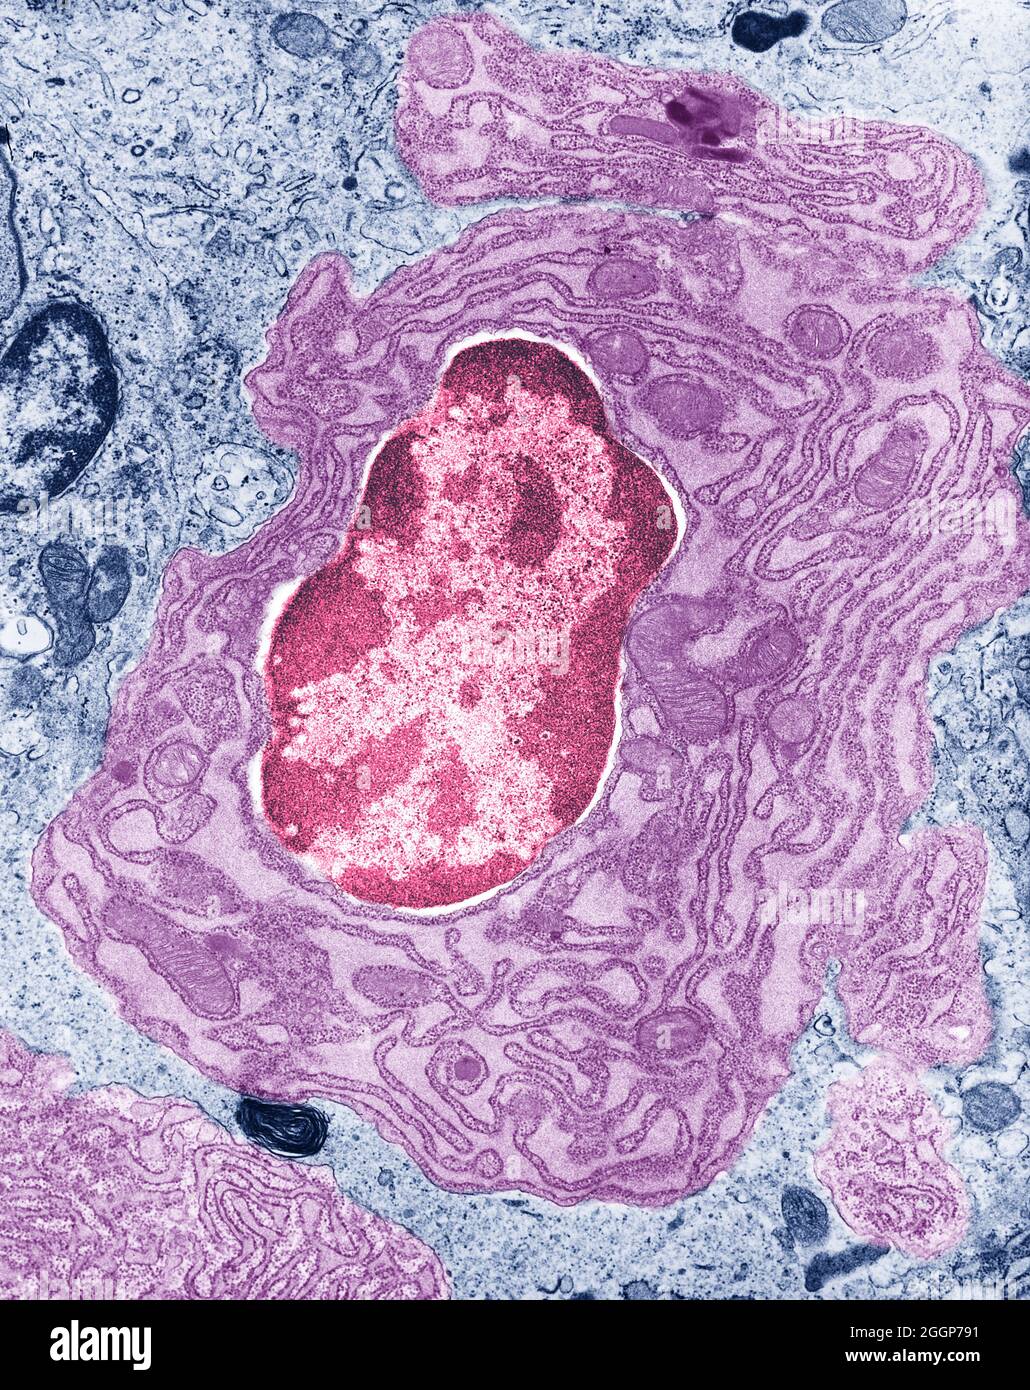 Micrografia elettronica a trasmissione colorata (TEM) della cellula intestinale, che mostra il nucleo e il reticolo endoplasmatico circostante e i mitocondri. Foto Stock